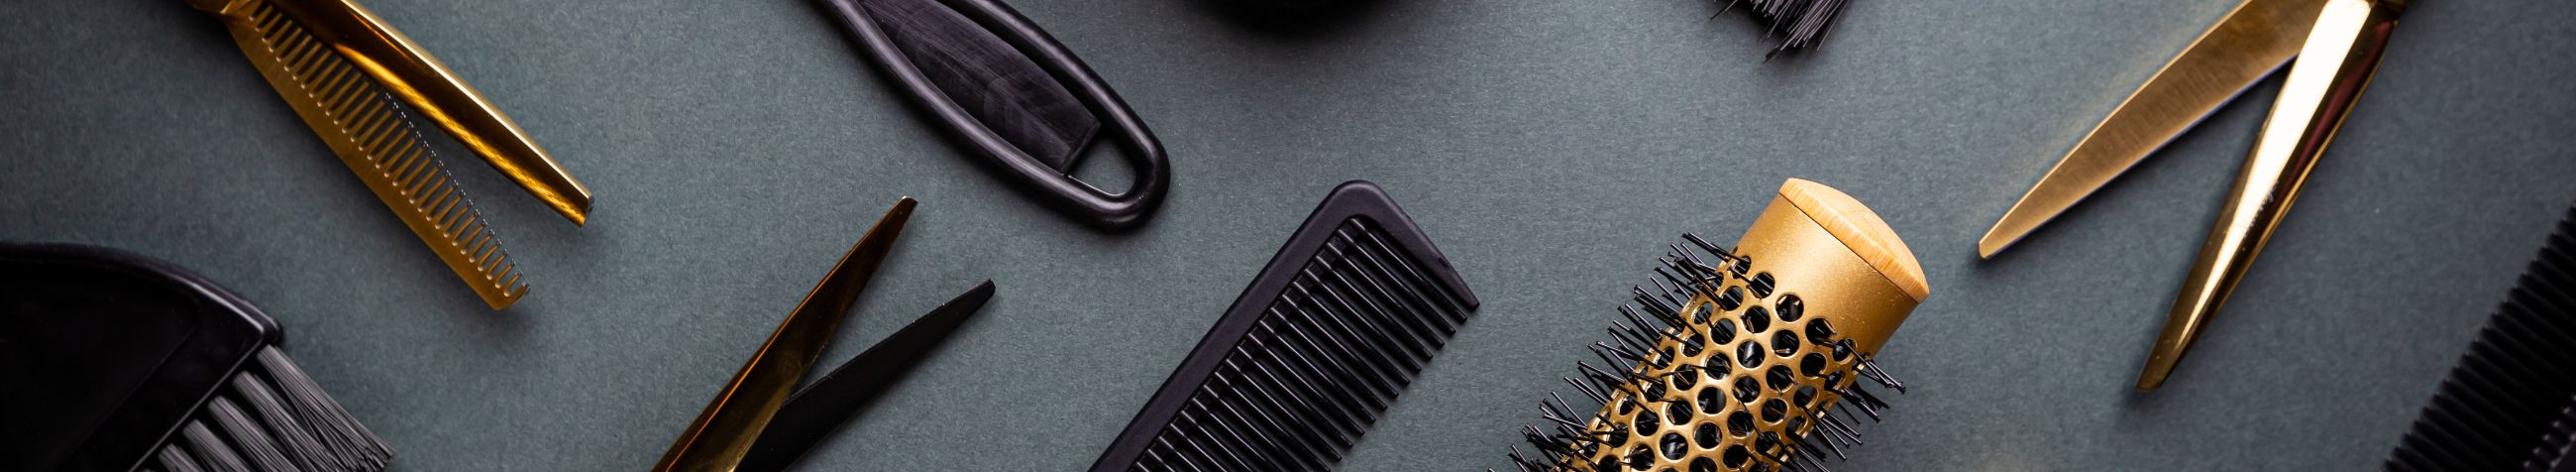 Pakume professionaalseid juuksuriteenuseid alates juuksevärvimisest ja lõikamisest kuni spetsiaalsete hooldusprotseduurideni, tagades klientidele kõrgekvaliteedilise juuksehoolduse ja stiilse väljanägemise.